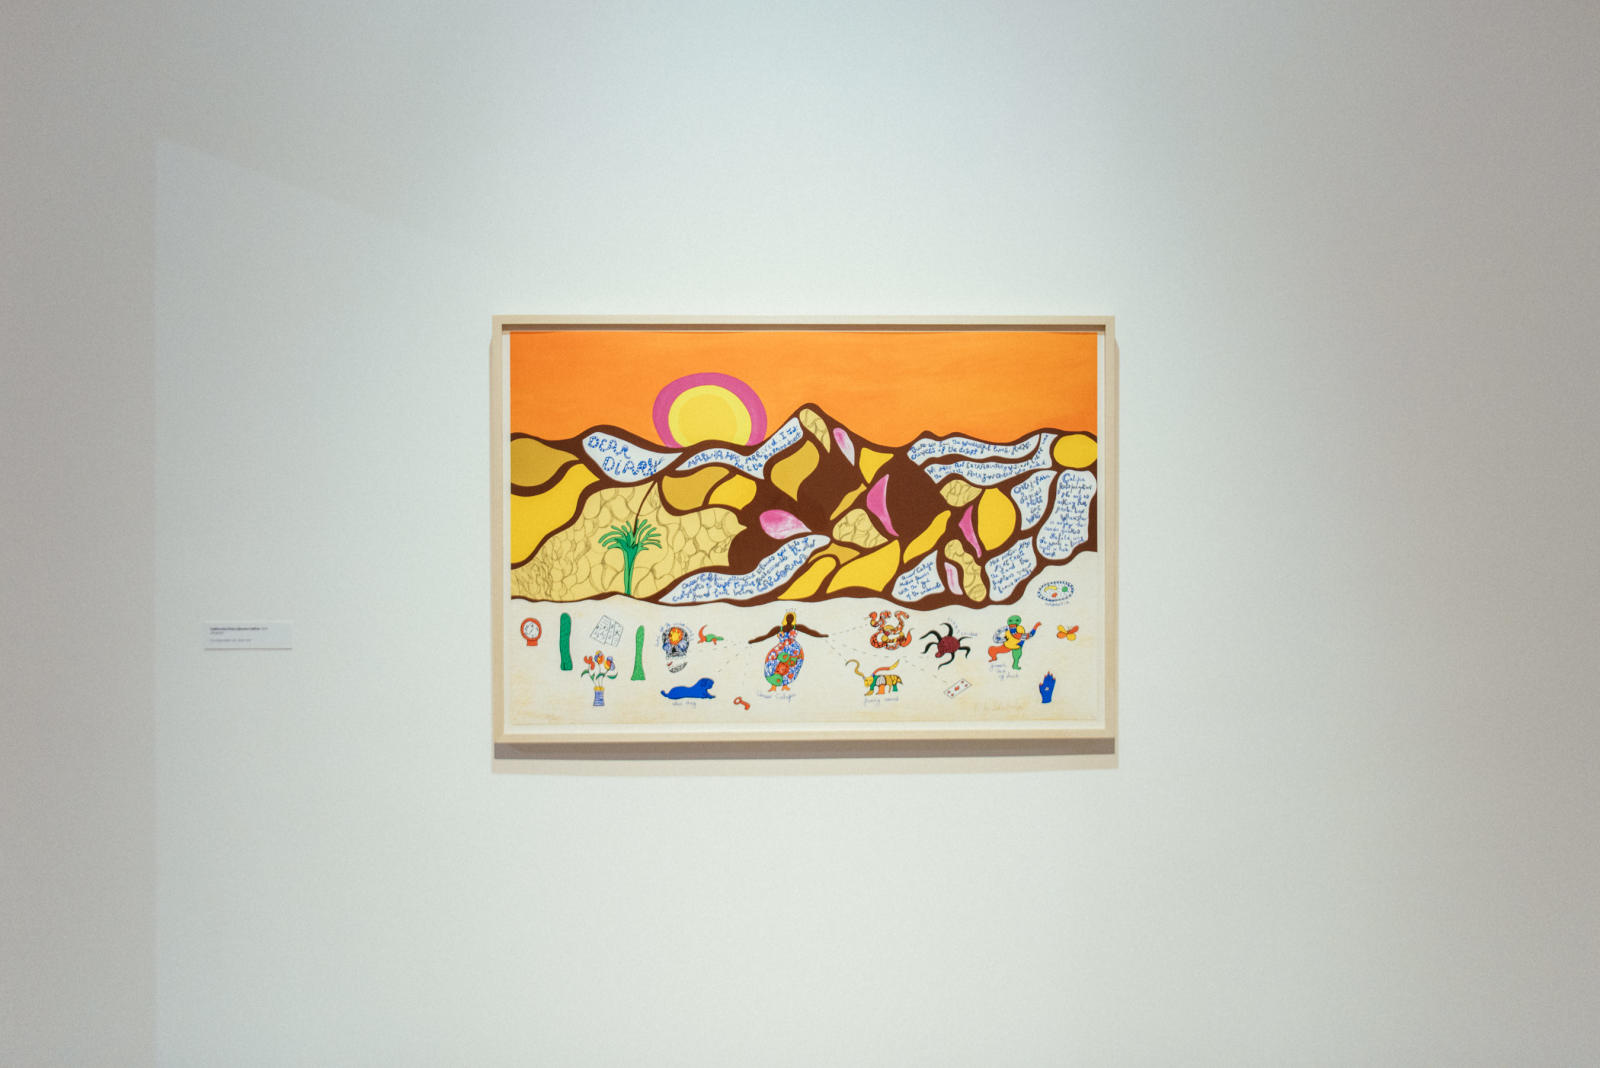 The art works of Niki de Saint Phalle3